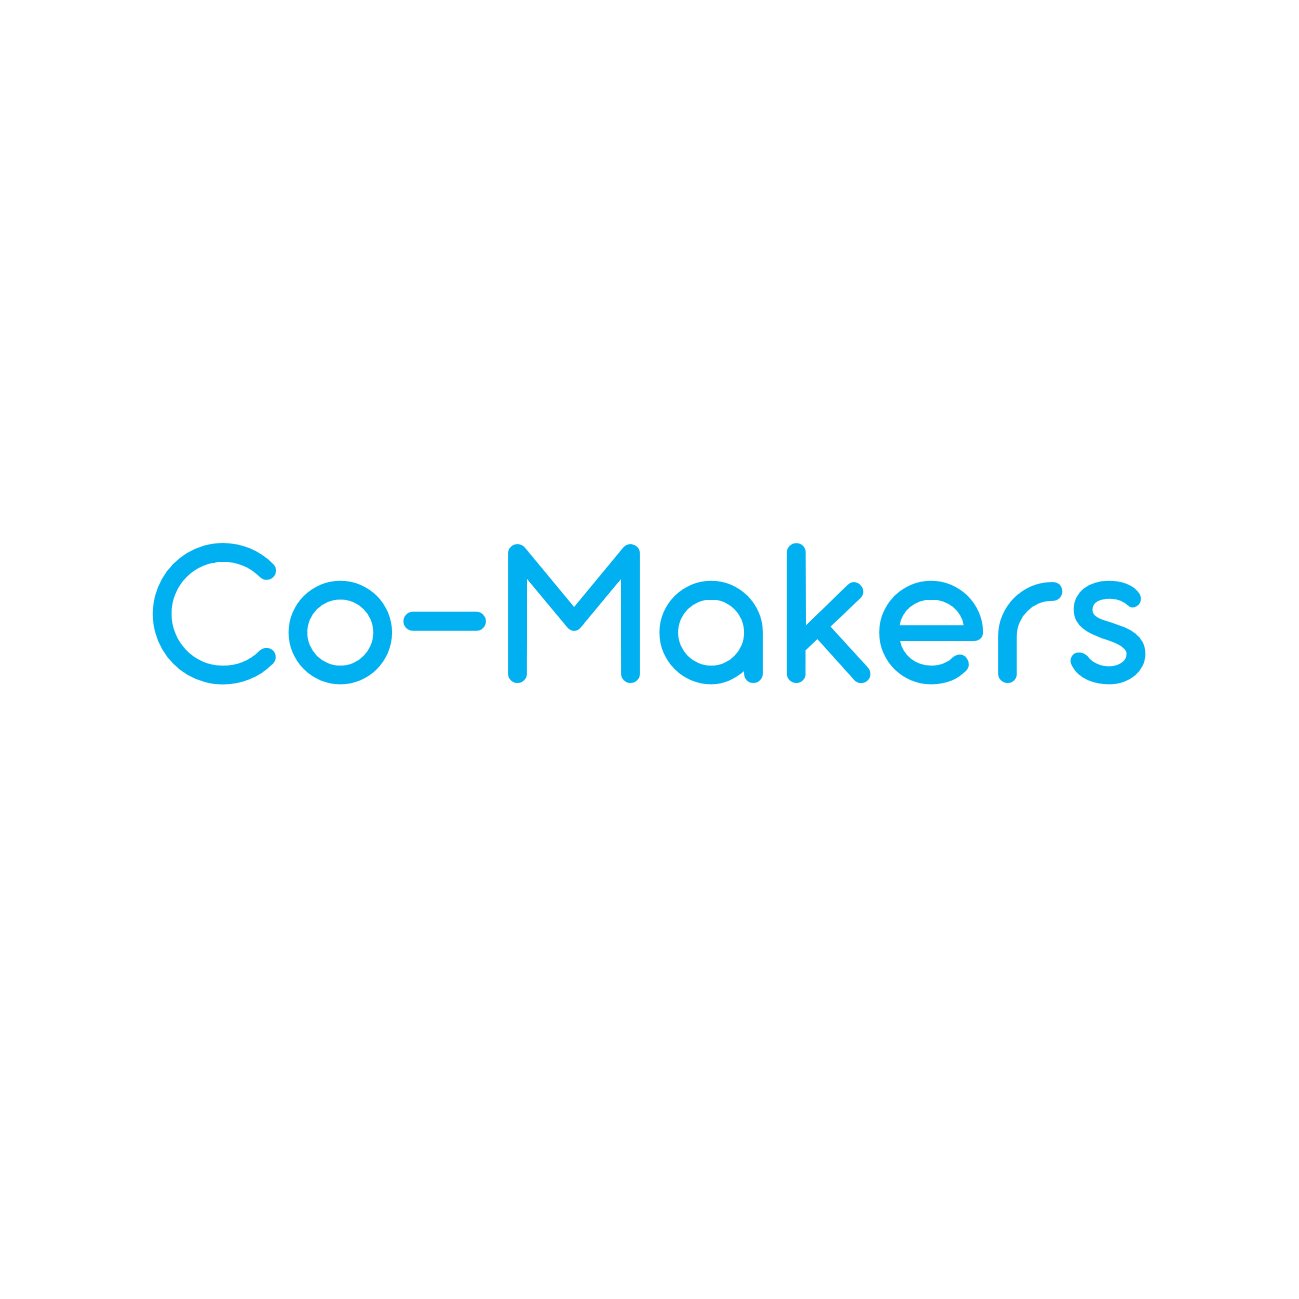 Co-Makers est la 1ère #communauté qui rapproche #Entreprises, #Makers et #FabLabs💡
On tweet #Innovation #Tech #Fablabs #LieuxTiers #Startup #3D #entrepreunariat